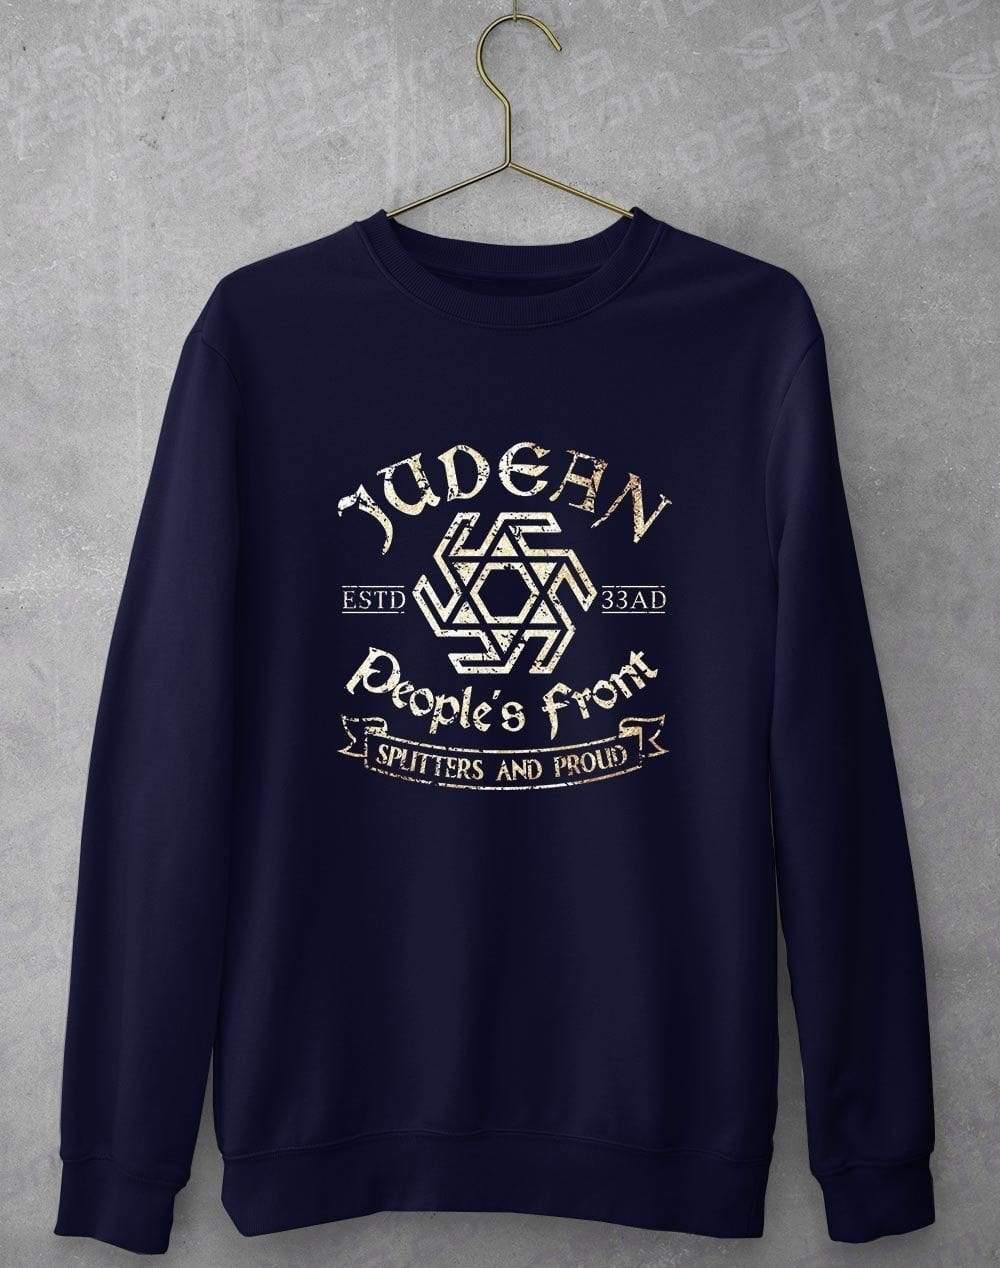 Judean Peoples Front Sweatshirt S / Navy  - Off World Tees